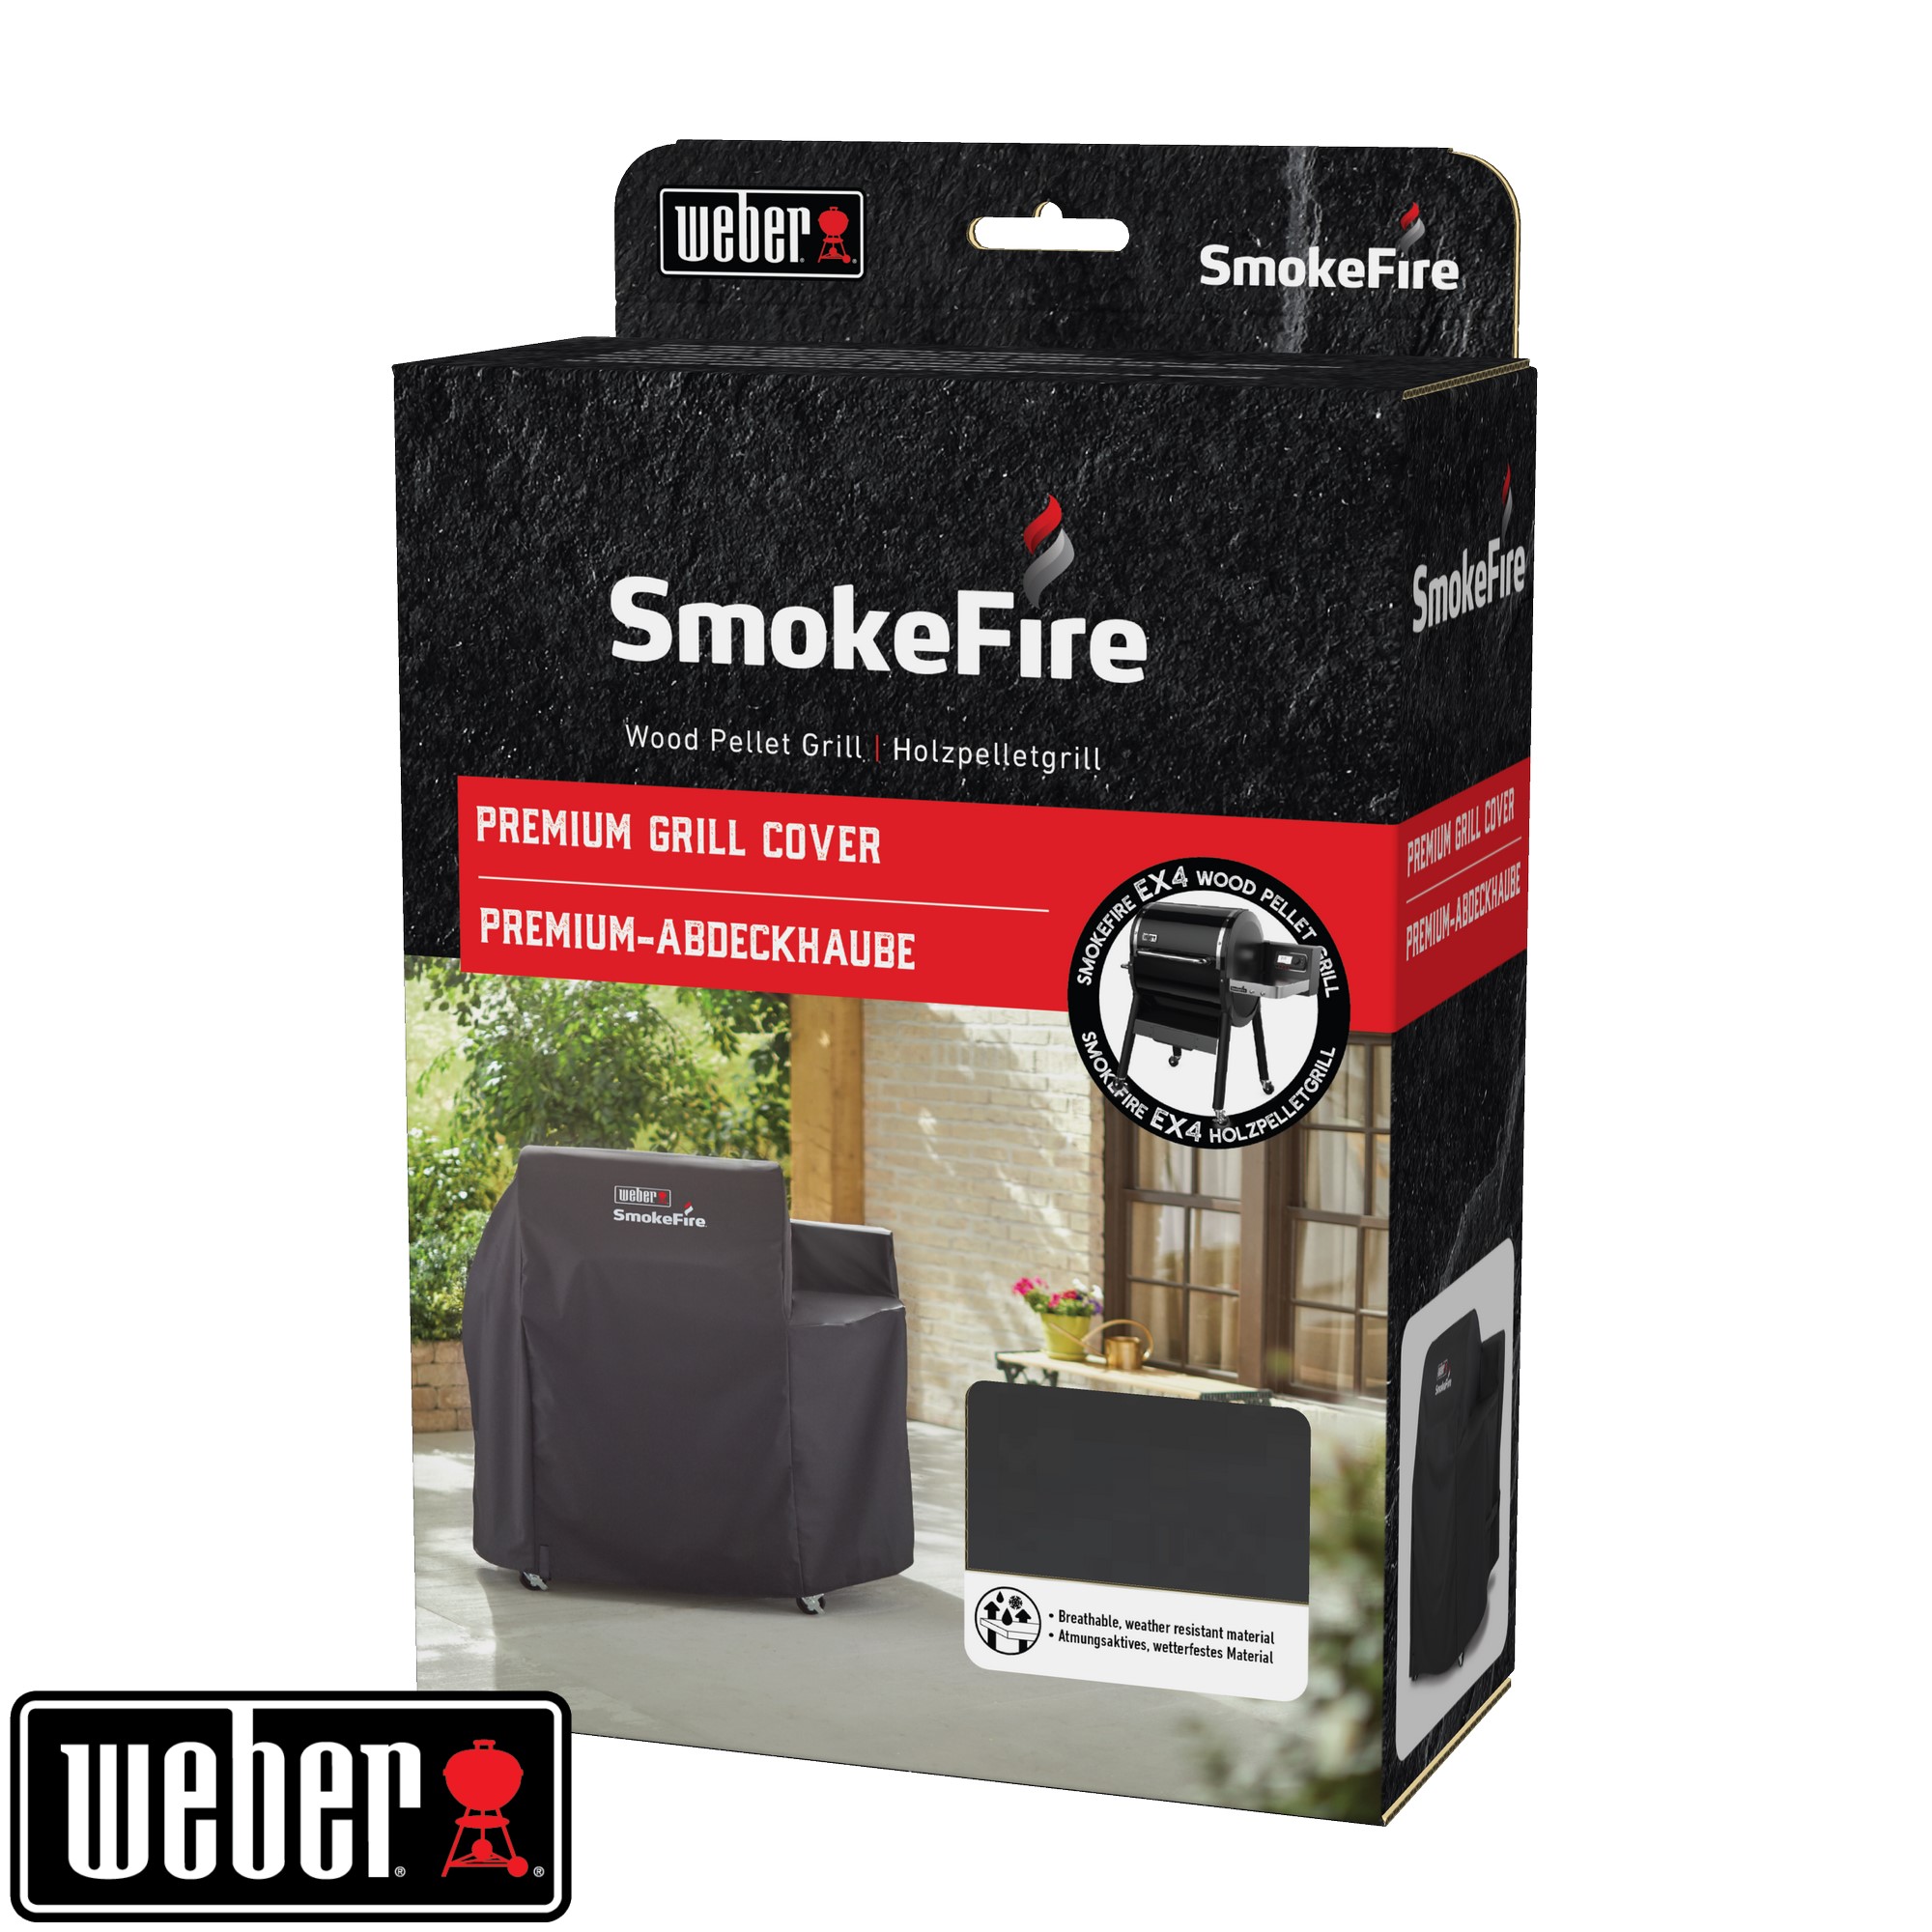 Premium-Abdeckhaube Passend für den SmokeFire EX4 Holzpellet-Grill